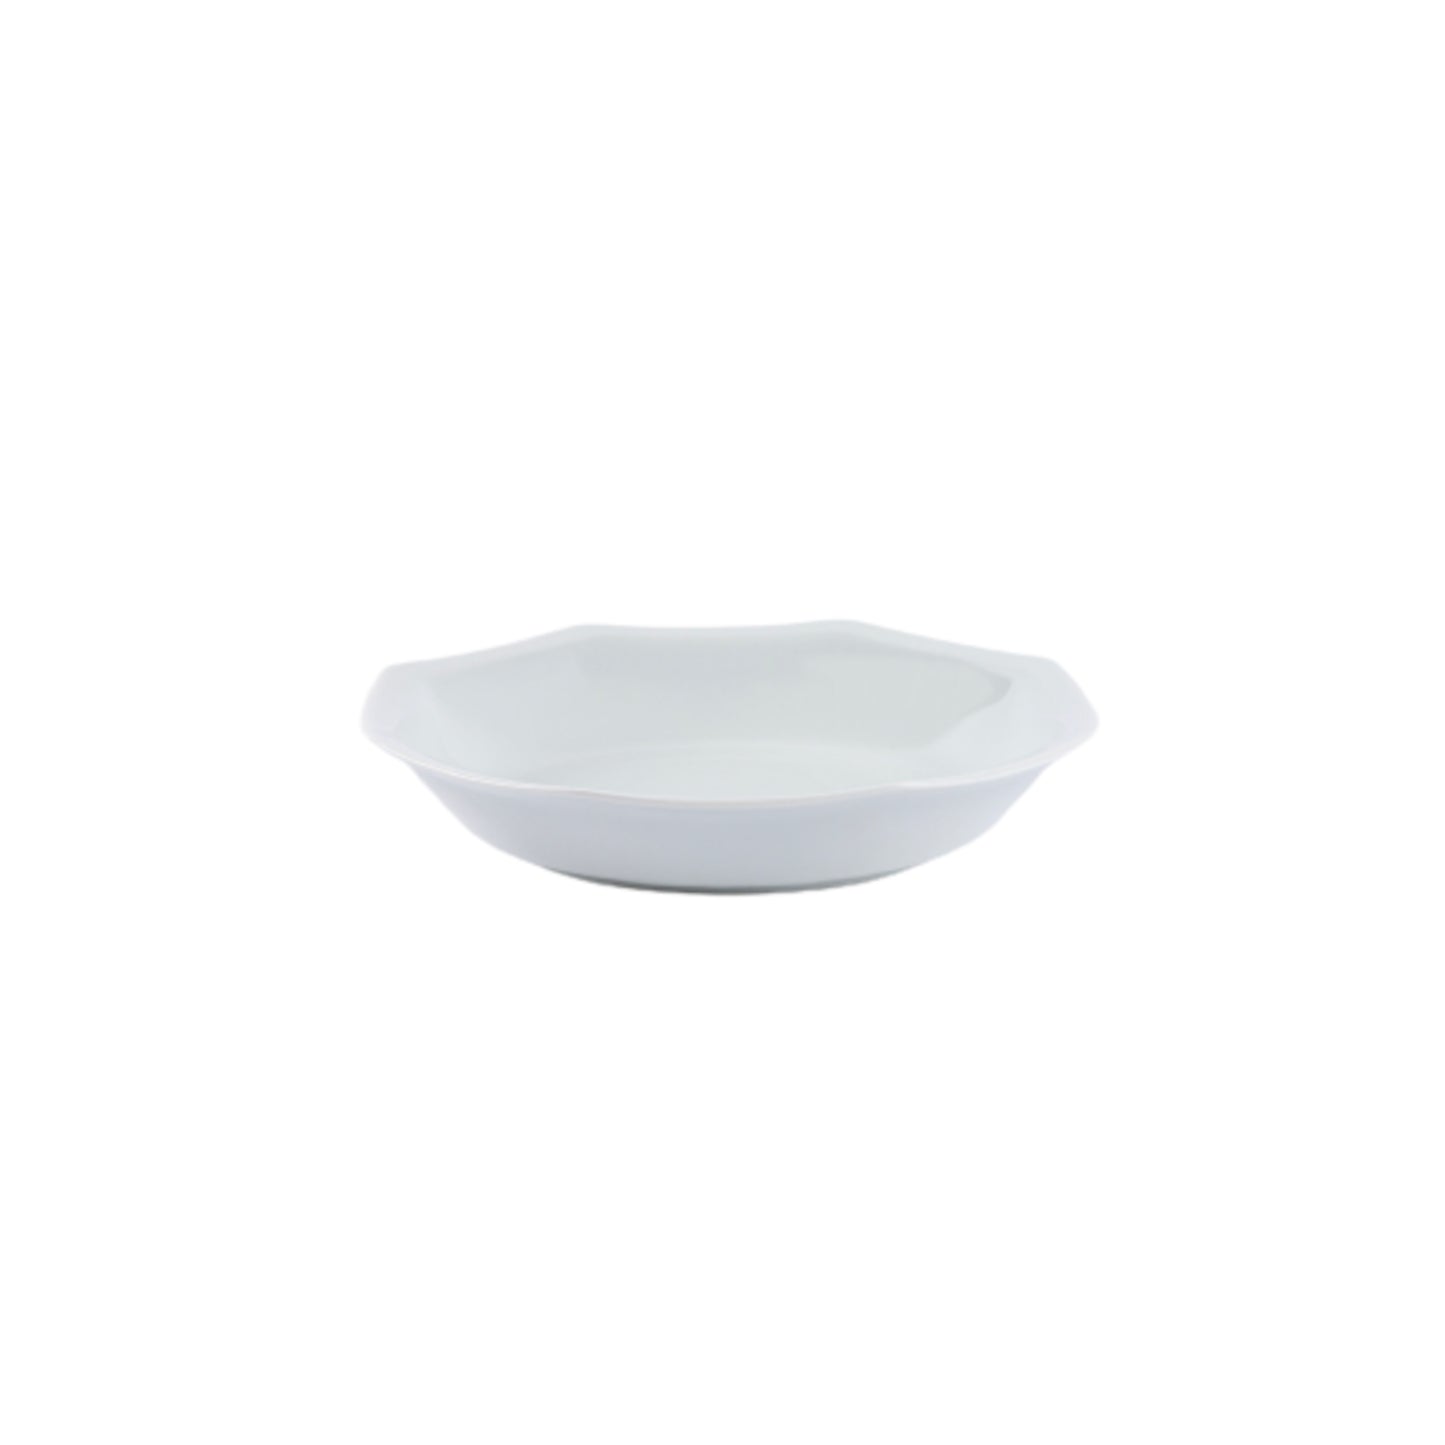 Vue de profil de l'assiette creuse octogonale en porcelaine française blanche